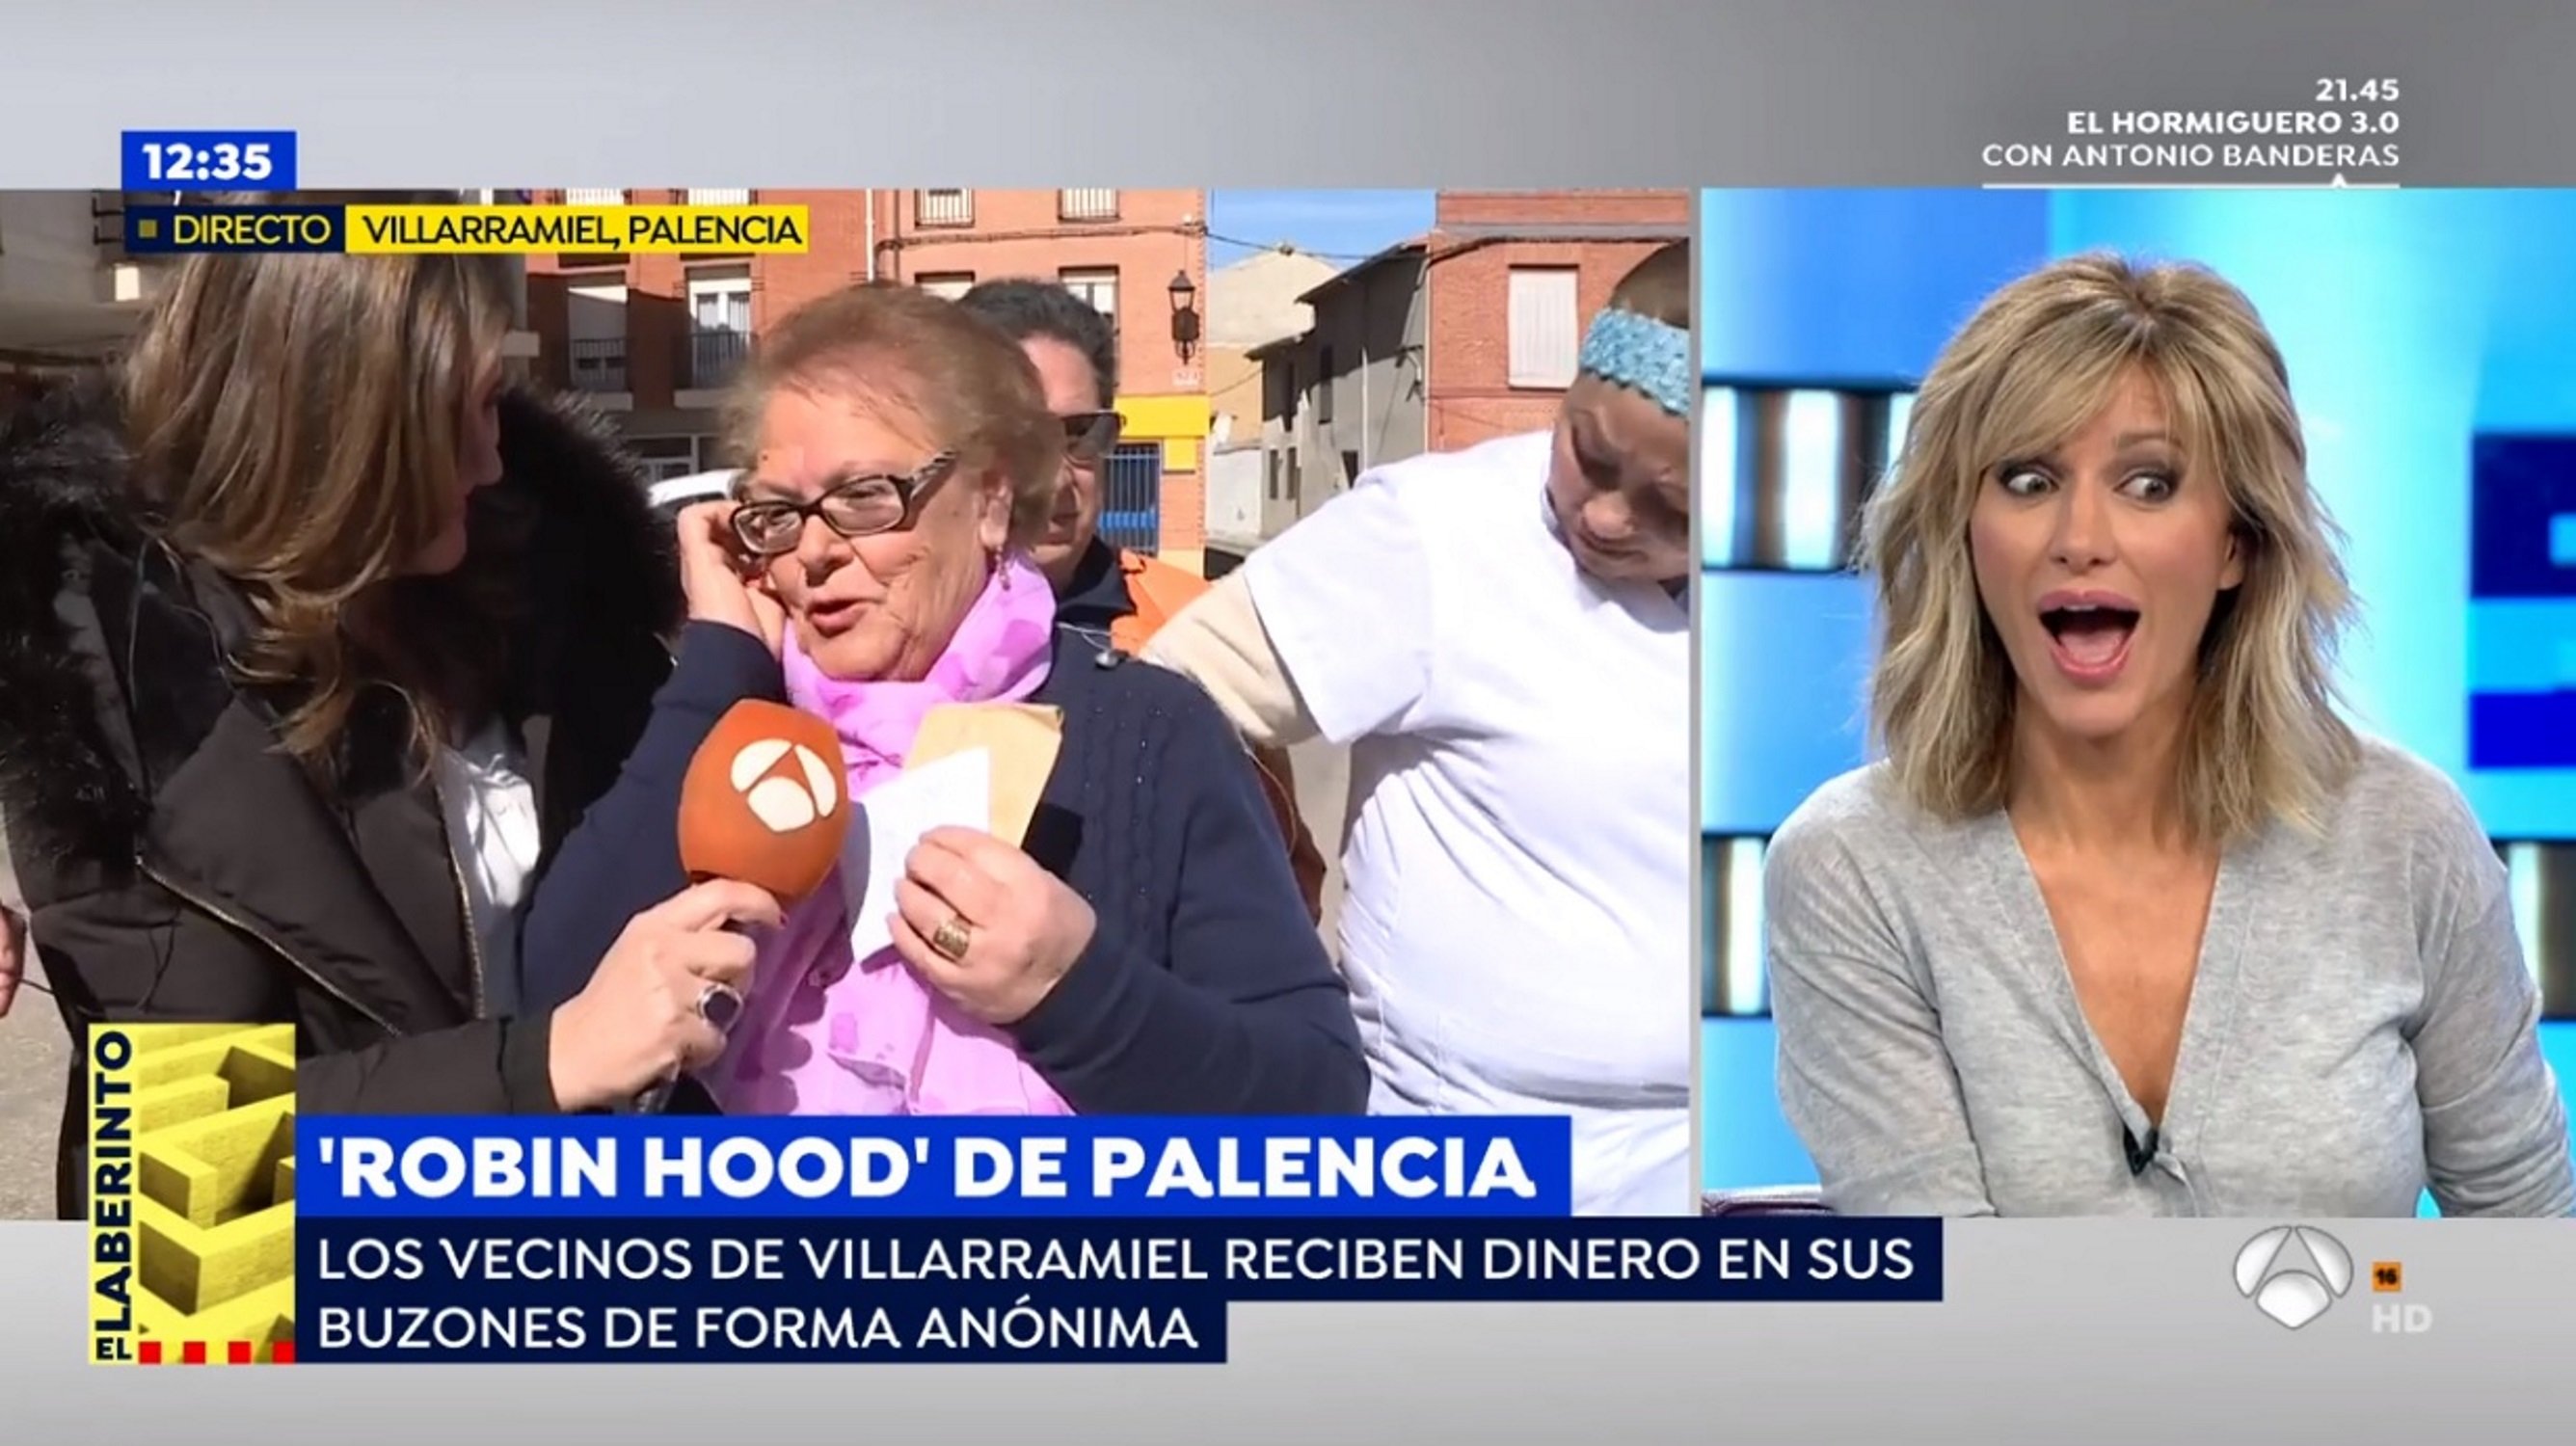 El “Robin Hood de Palència” regala diners i a Antena 3 assenyalen Pedro Sánchez